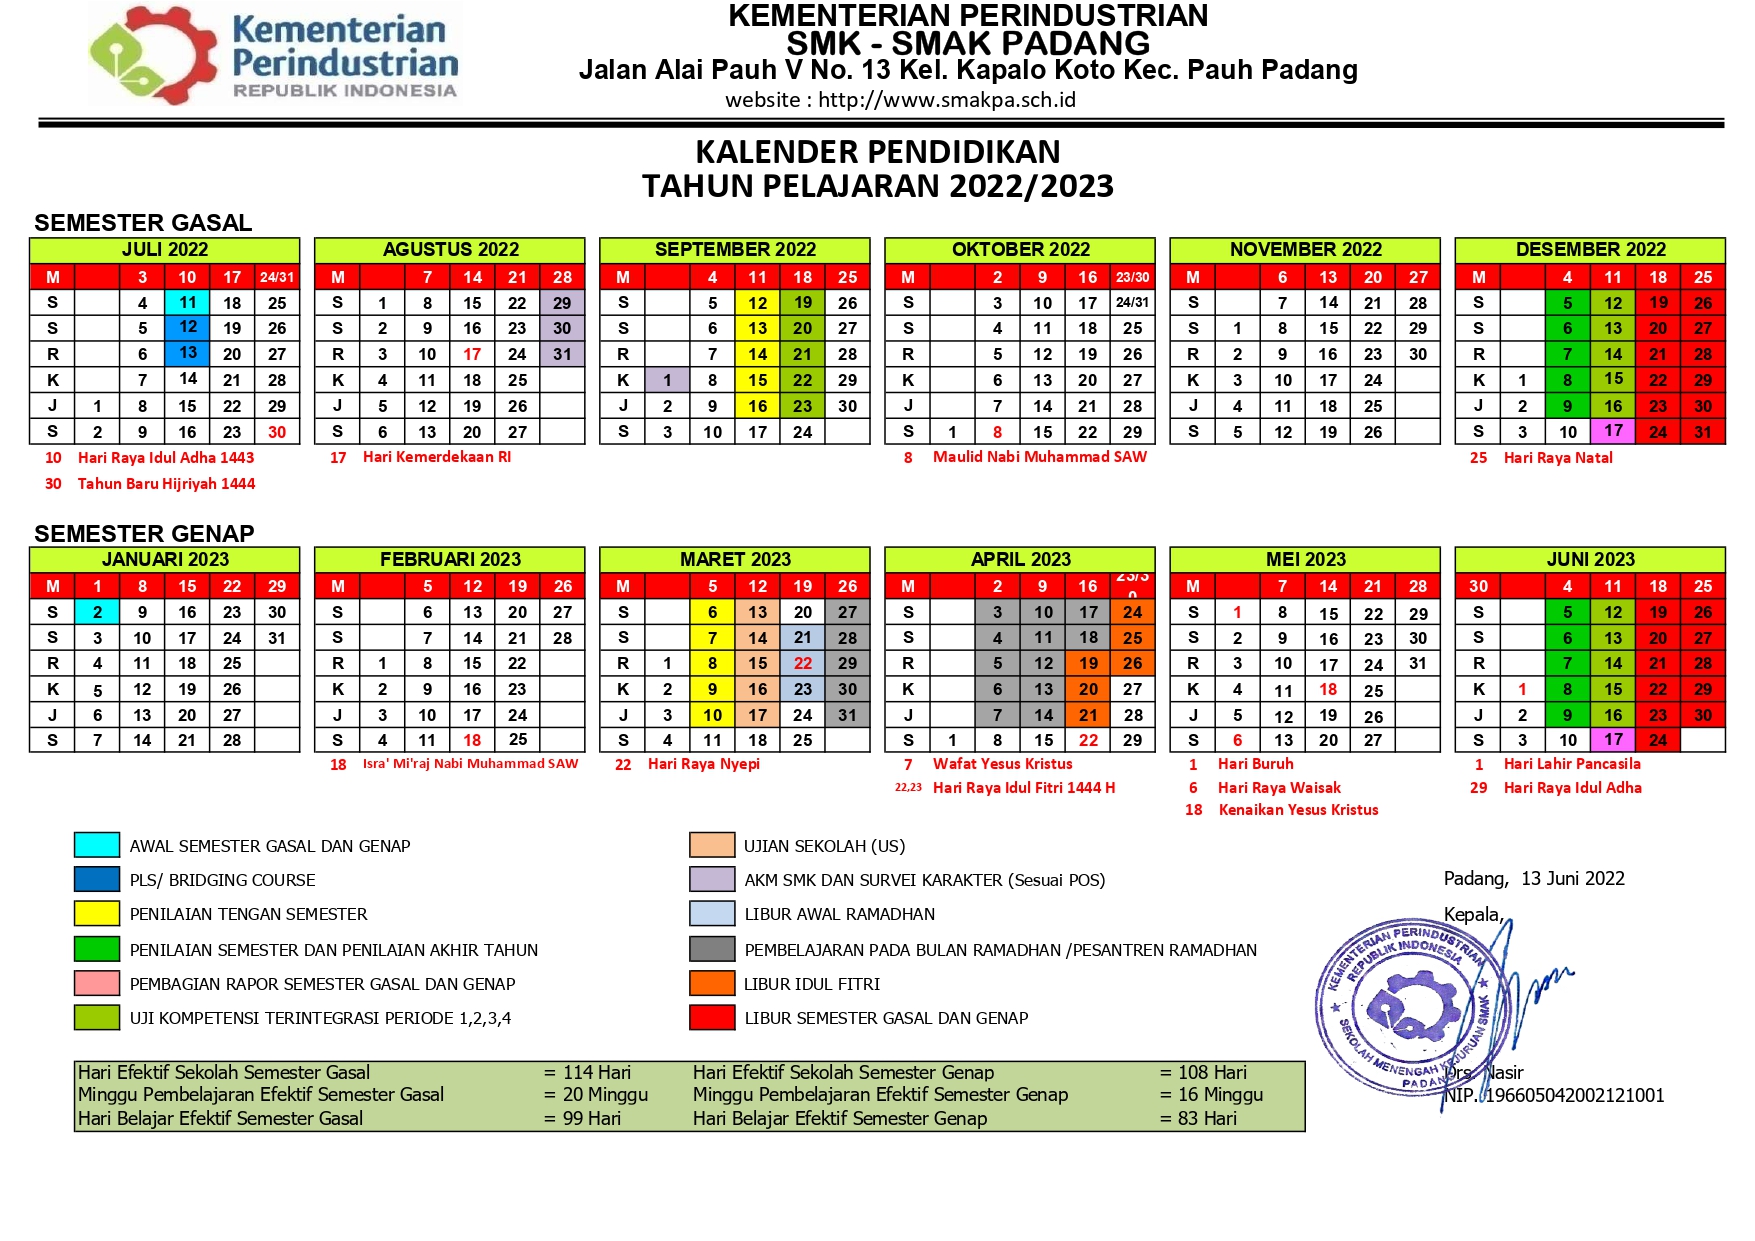 Kalender Pendidikan Smk Smak Padang